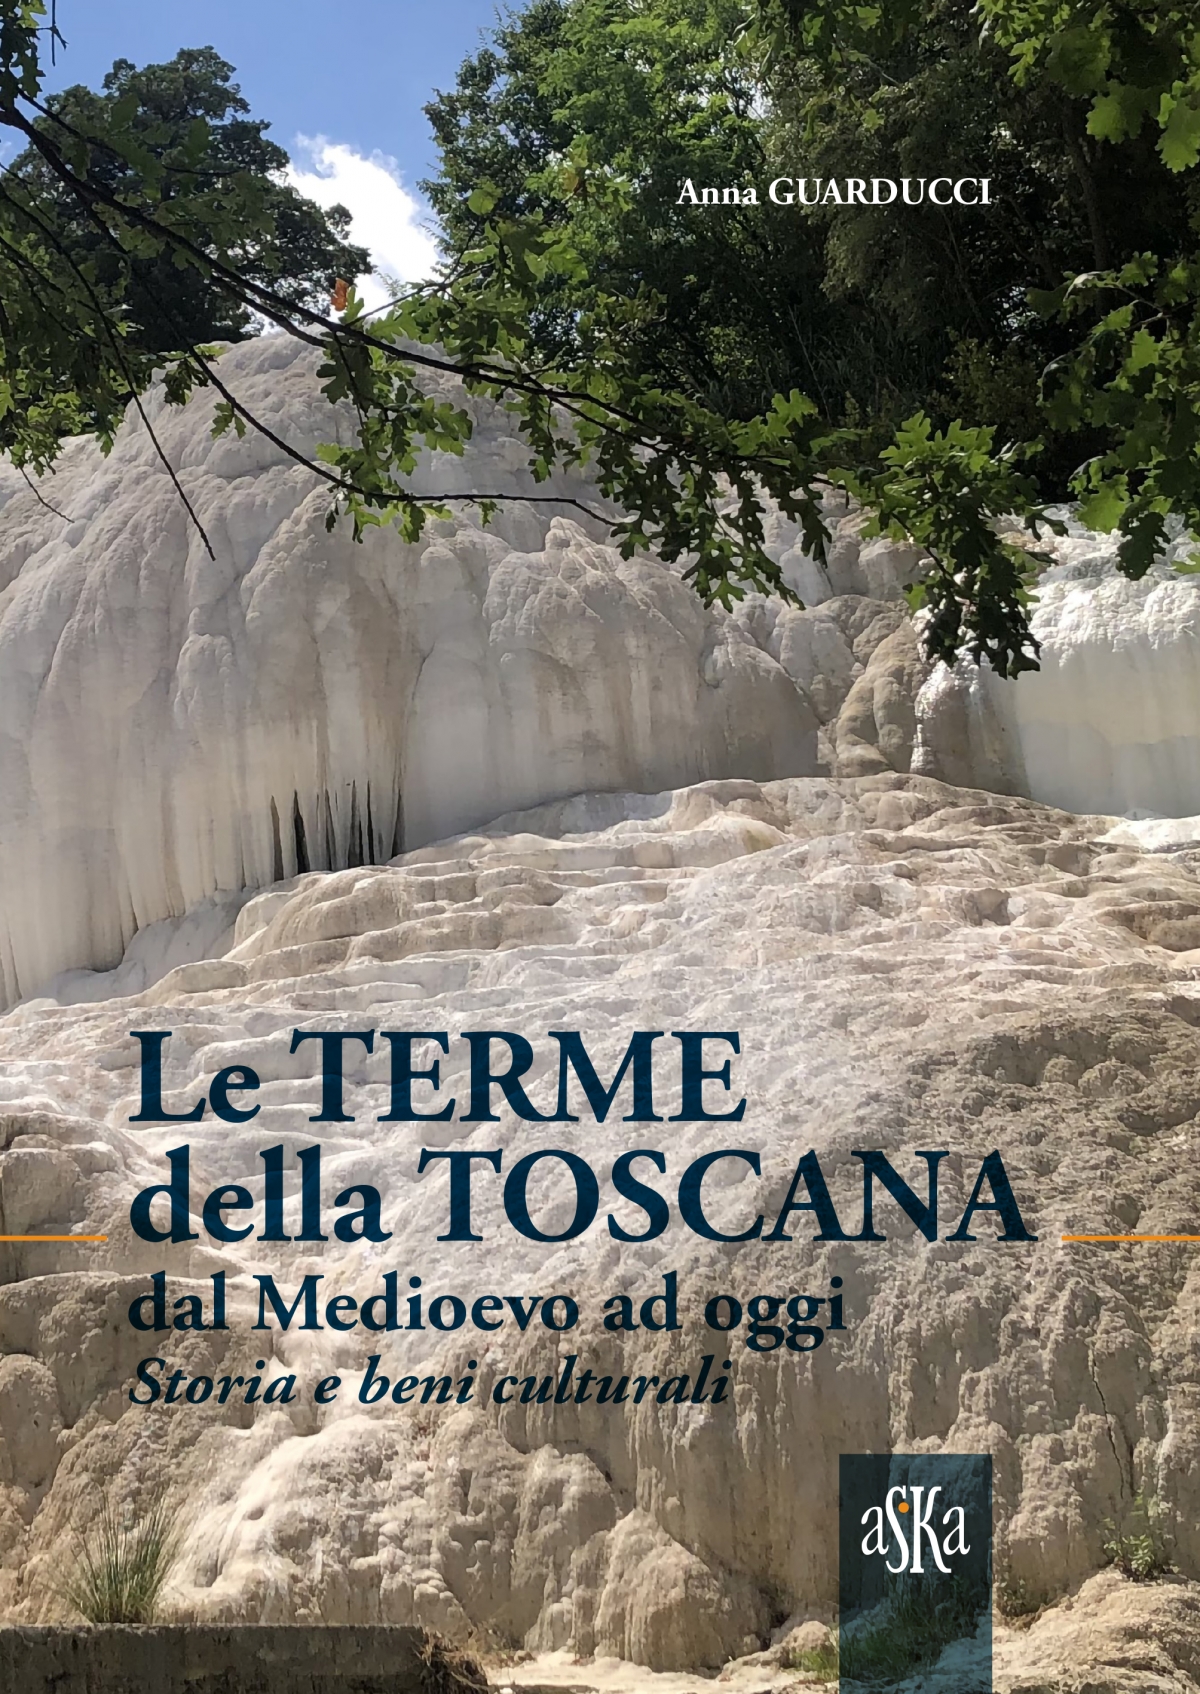 Le terme della Toscana dal Medioevo ad oggi. Storia e beni culturali